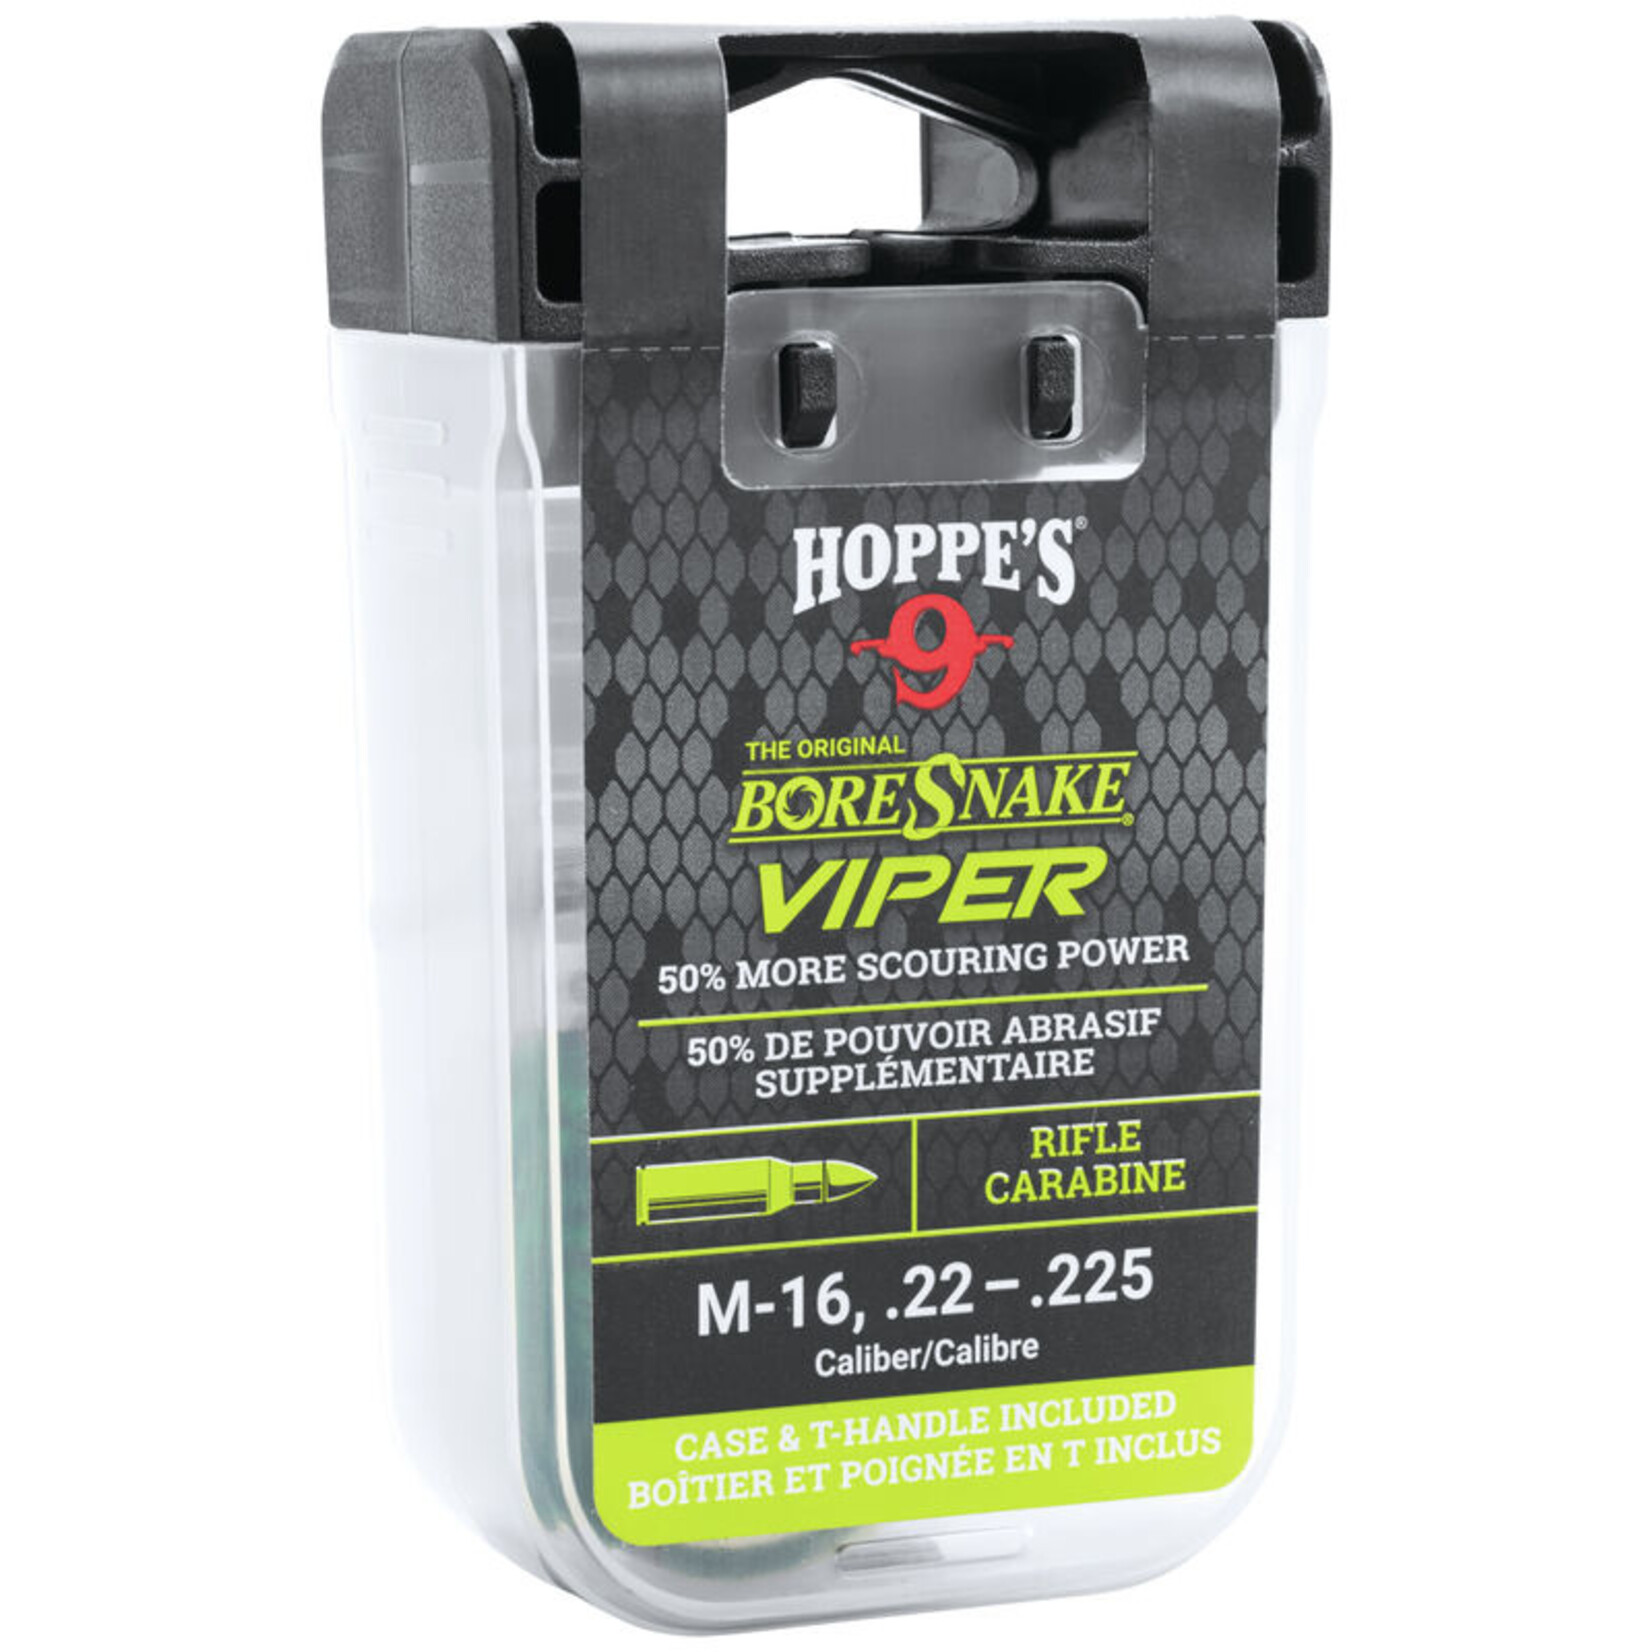 Hoppe's Boresnake Viper .416, .44